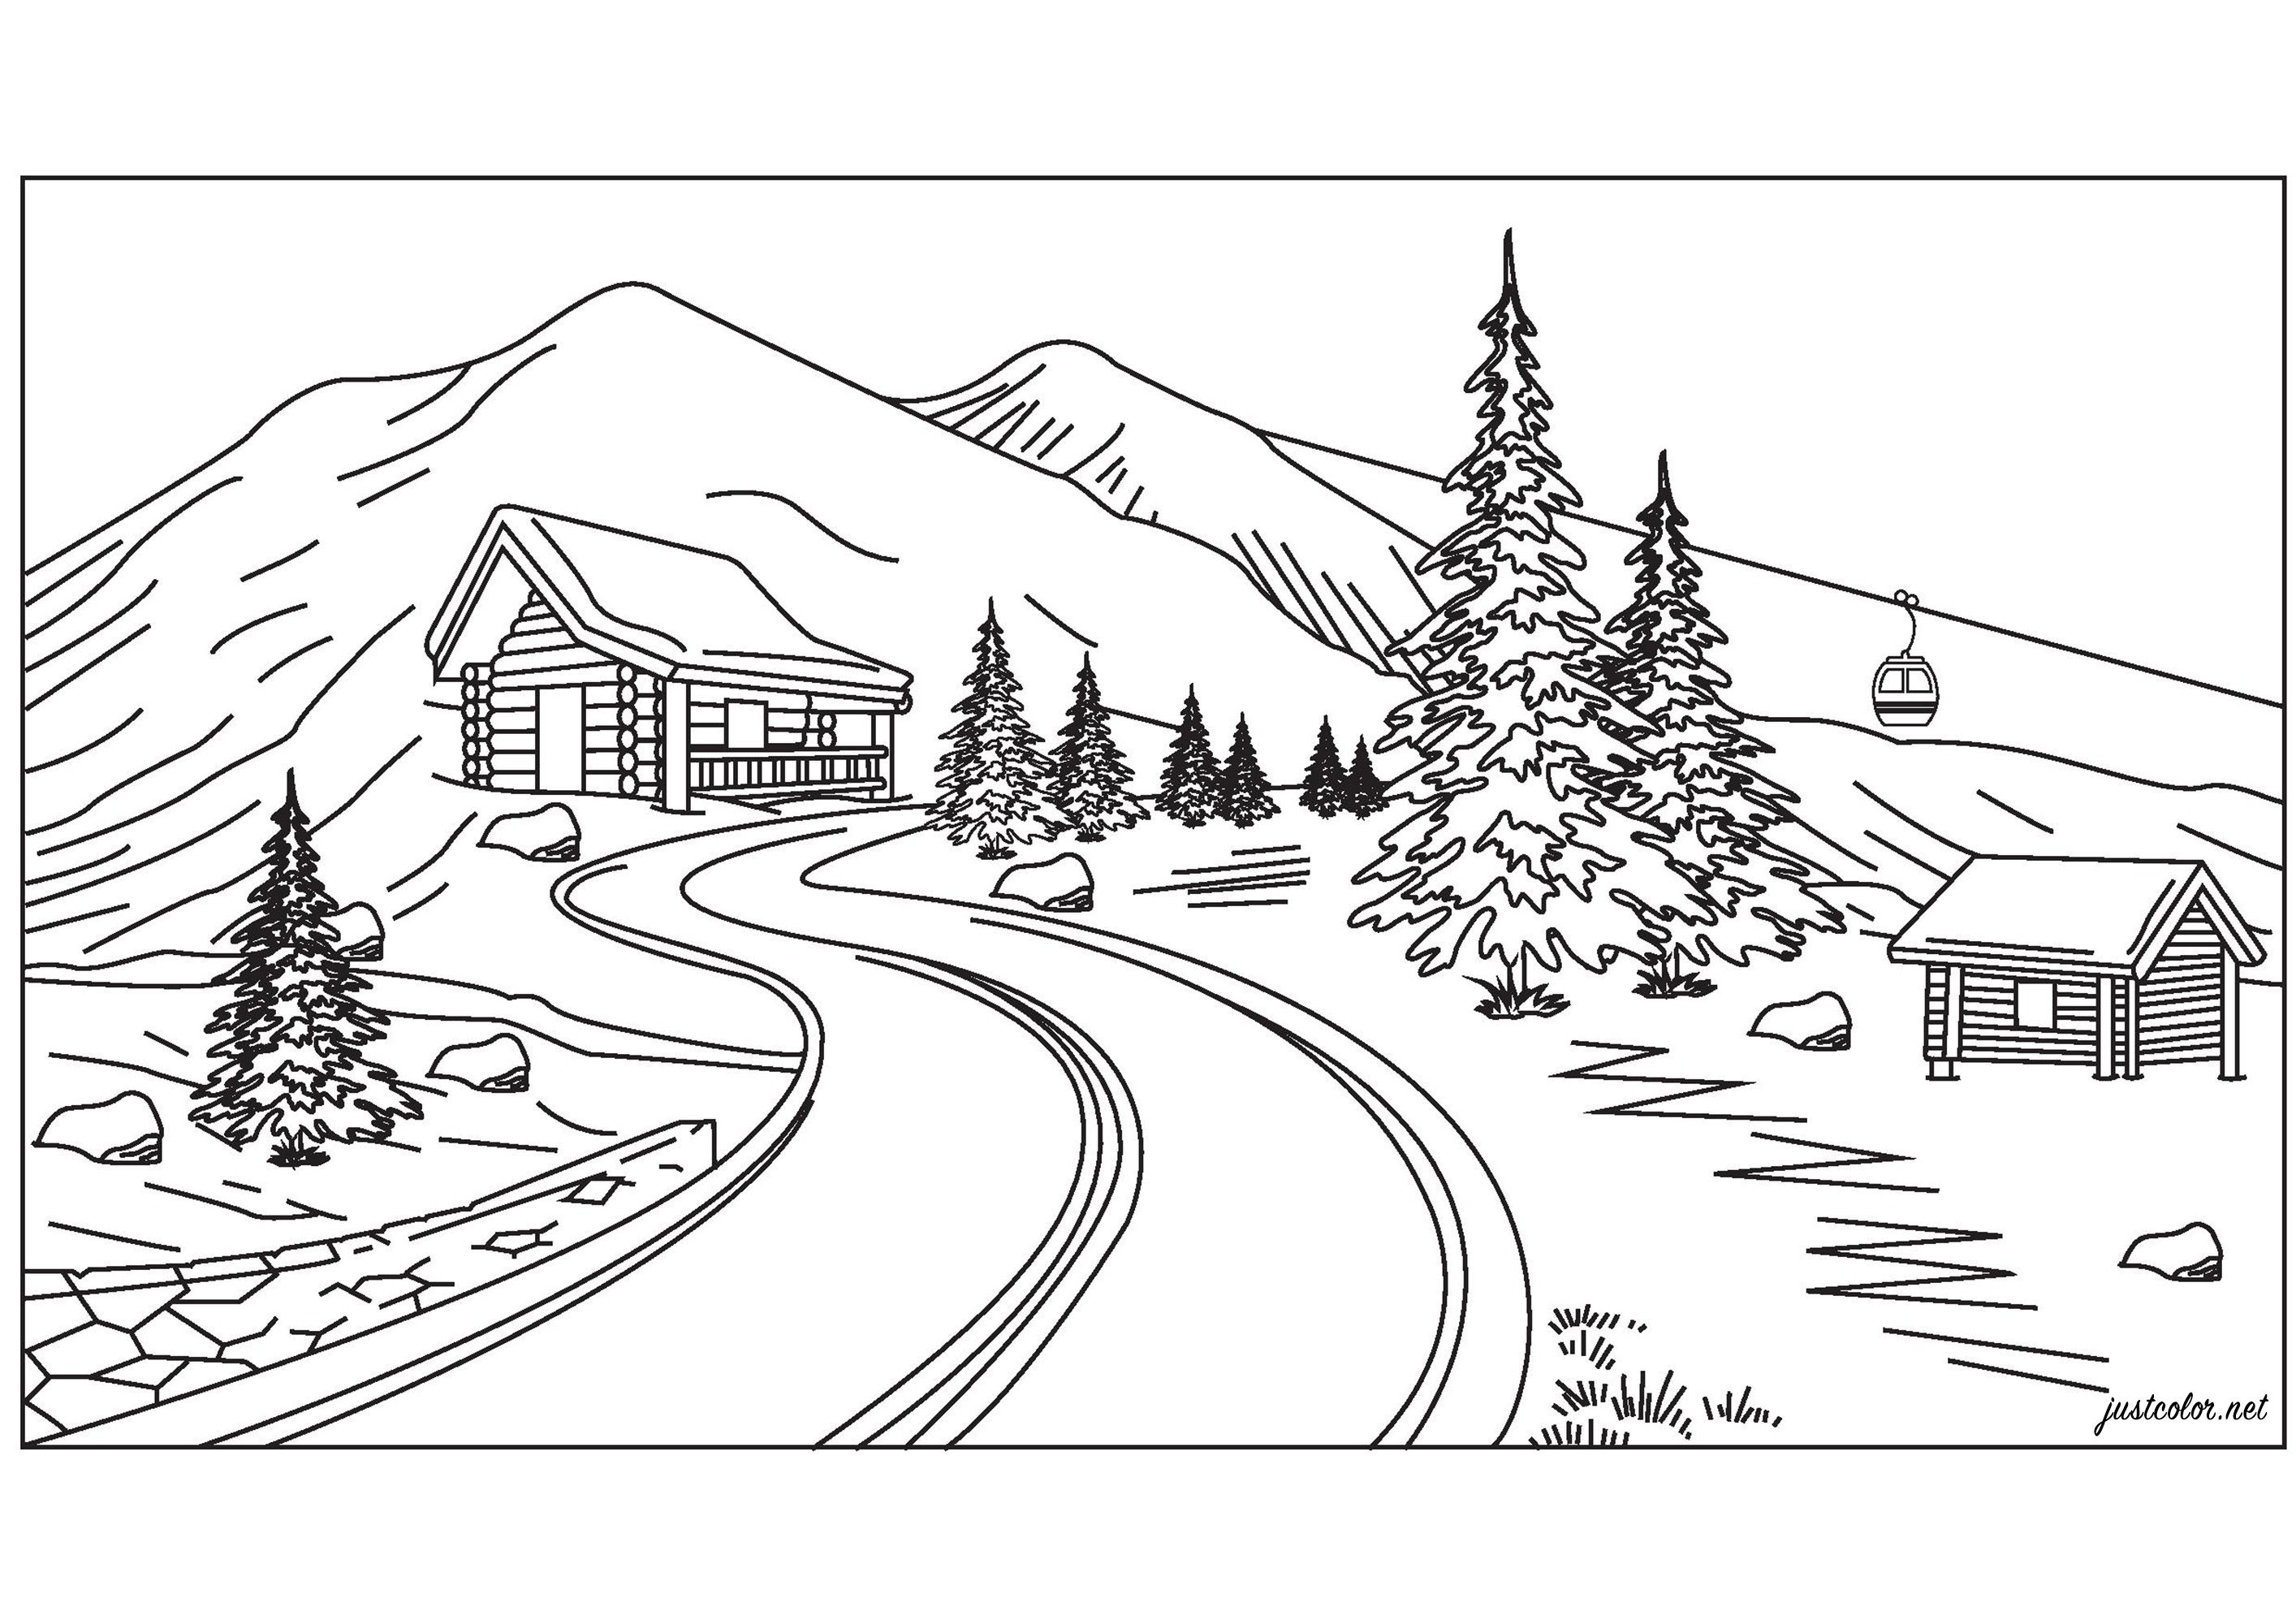 Paysage de haute montagne avec un joli chalet, des sapins, des remontées mécaniques et de belles montagnes enneigées, Artiste : Pierre C